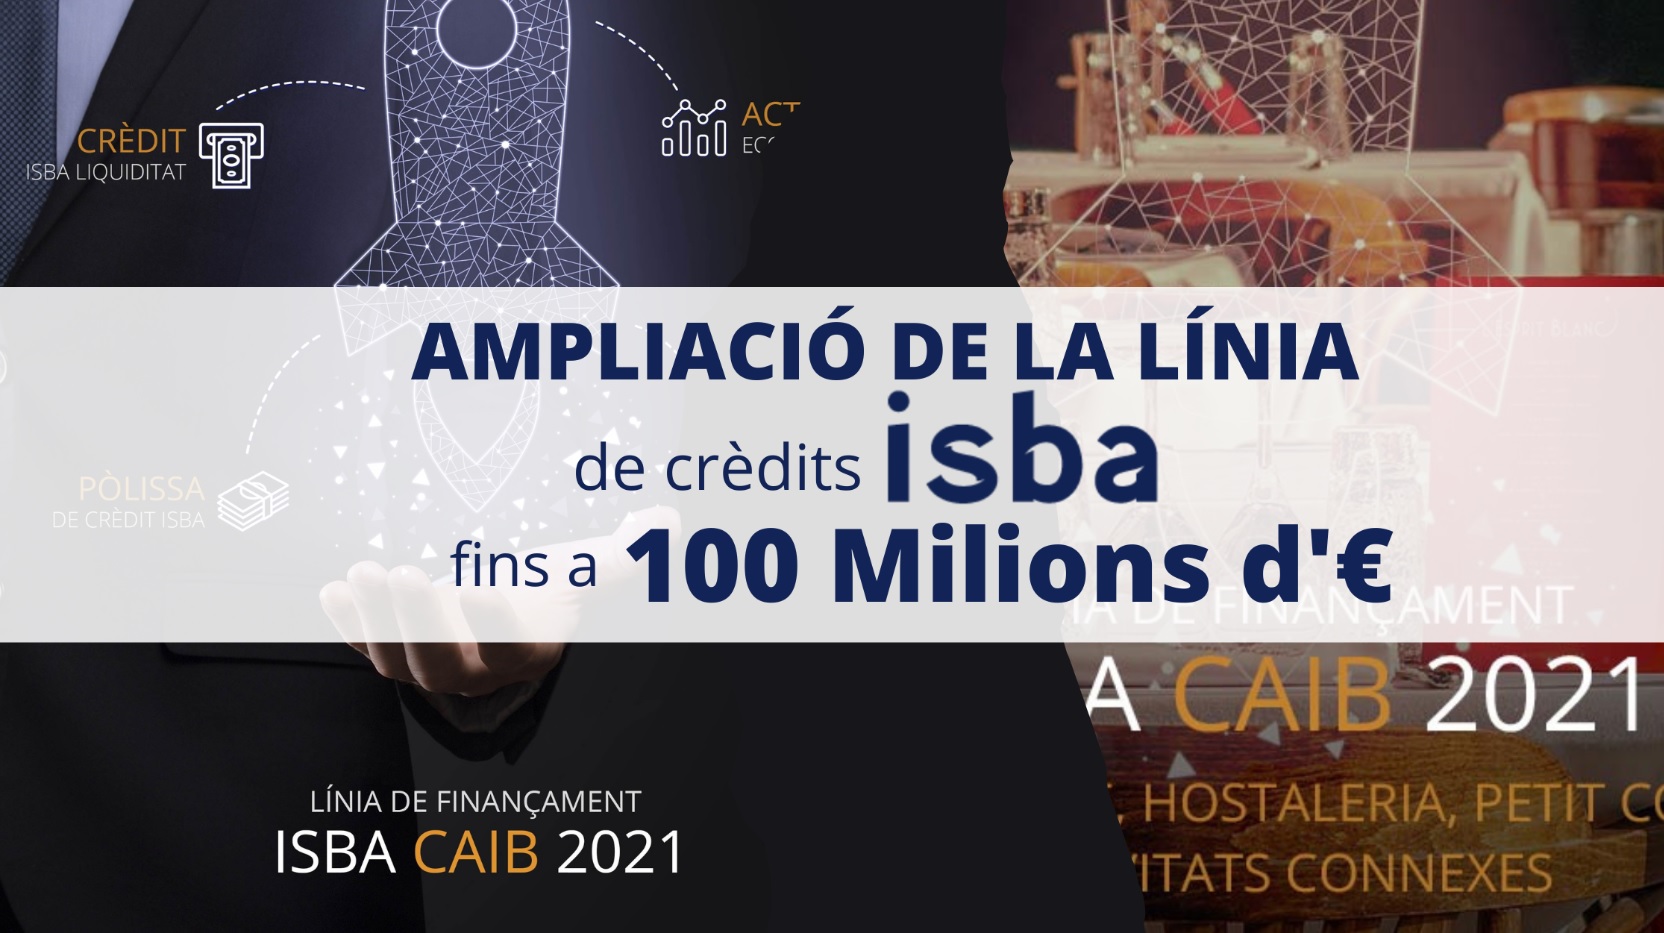 SE AMPLÍA LA LÍNEA HASTA 100 MILLONES DE EUROS LA LINEA ISBA CAIB 2021